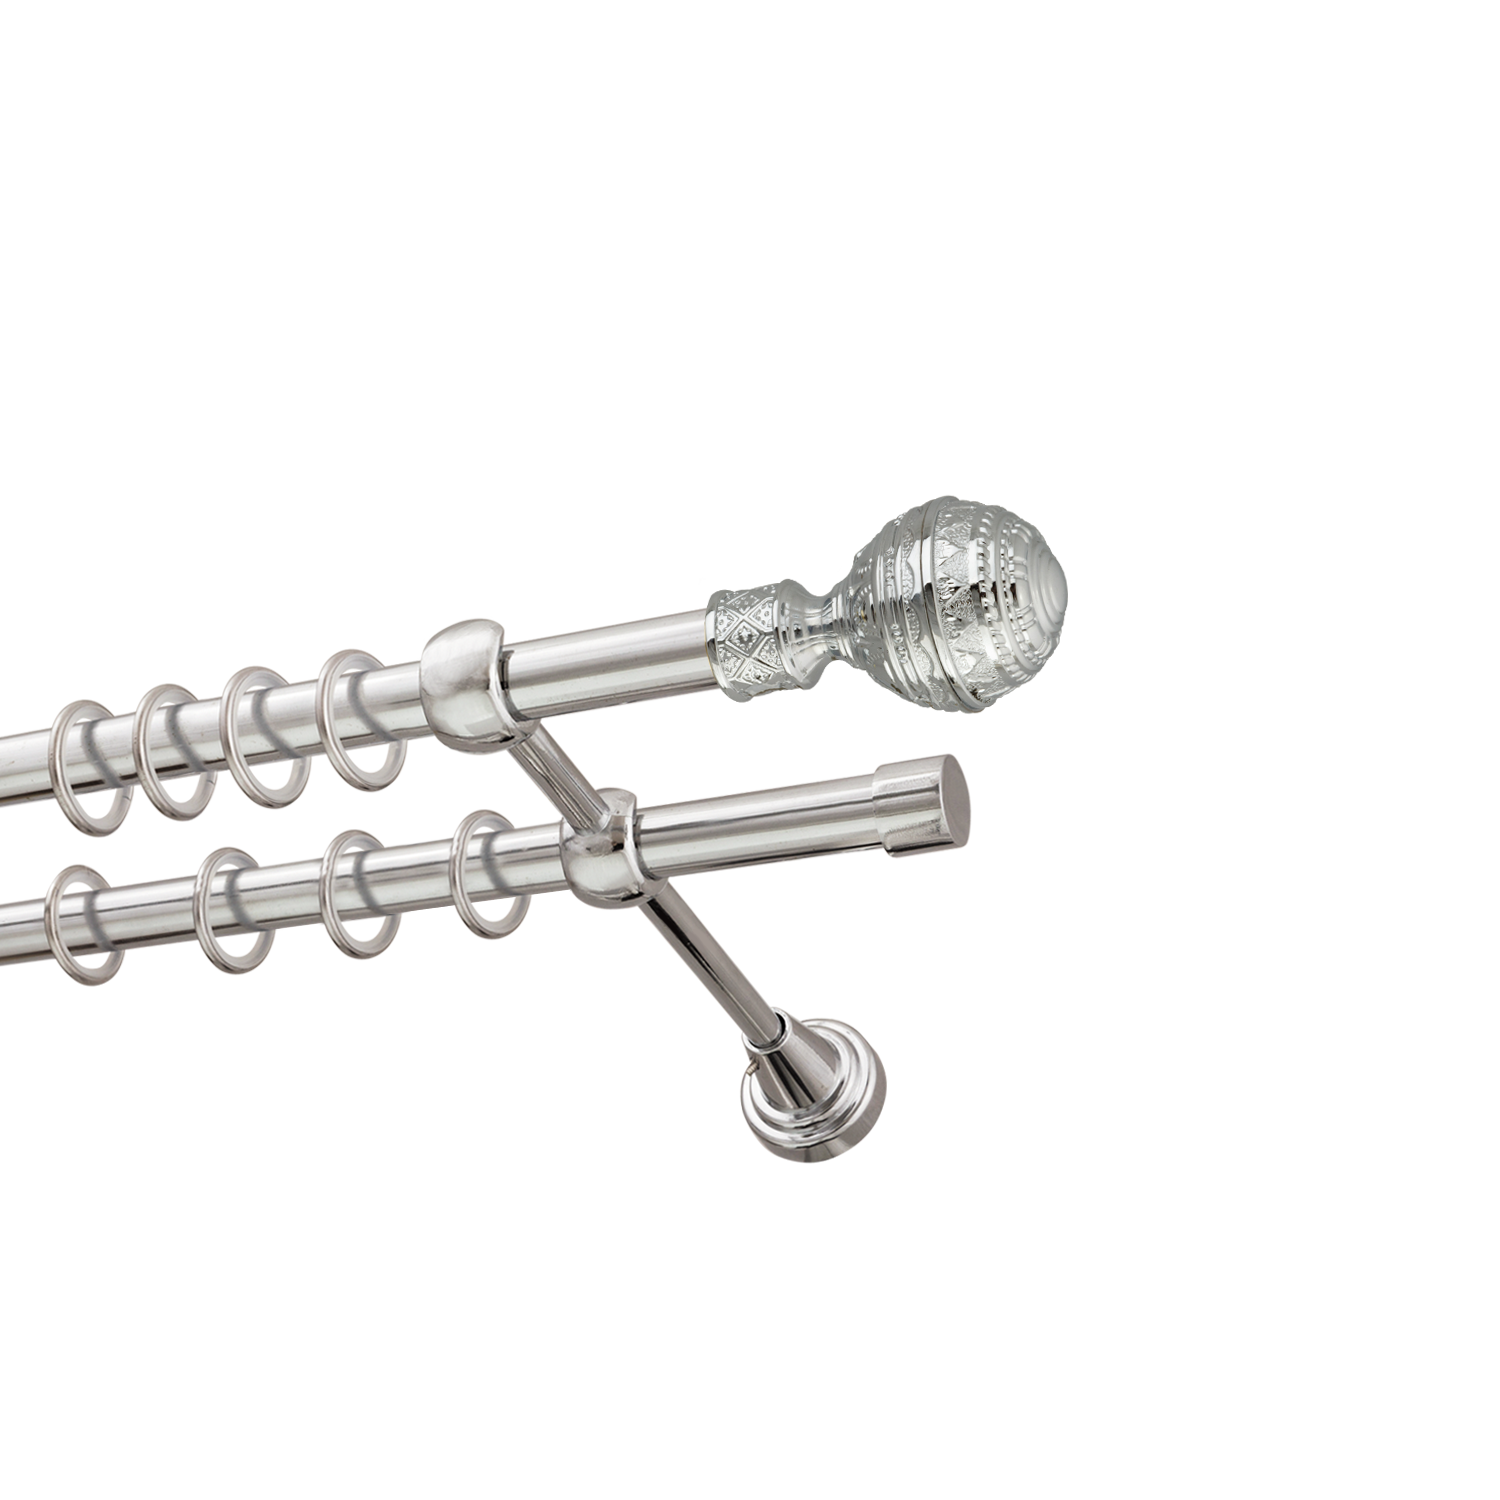 Металлический карниз для штор Роял, двухрядный 16/16 мм, серебро, гладкая штанга, длина 240 см